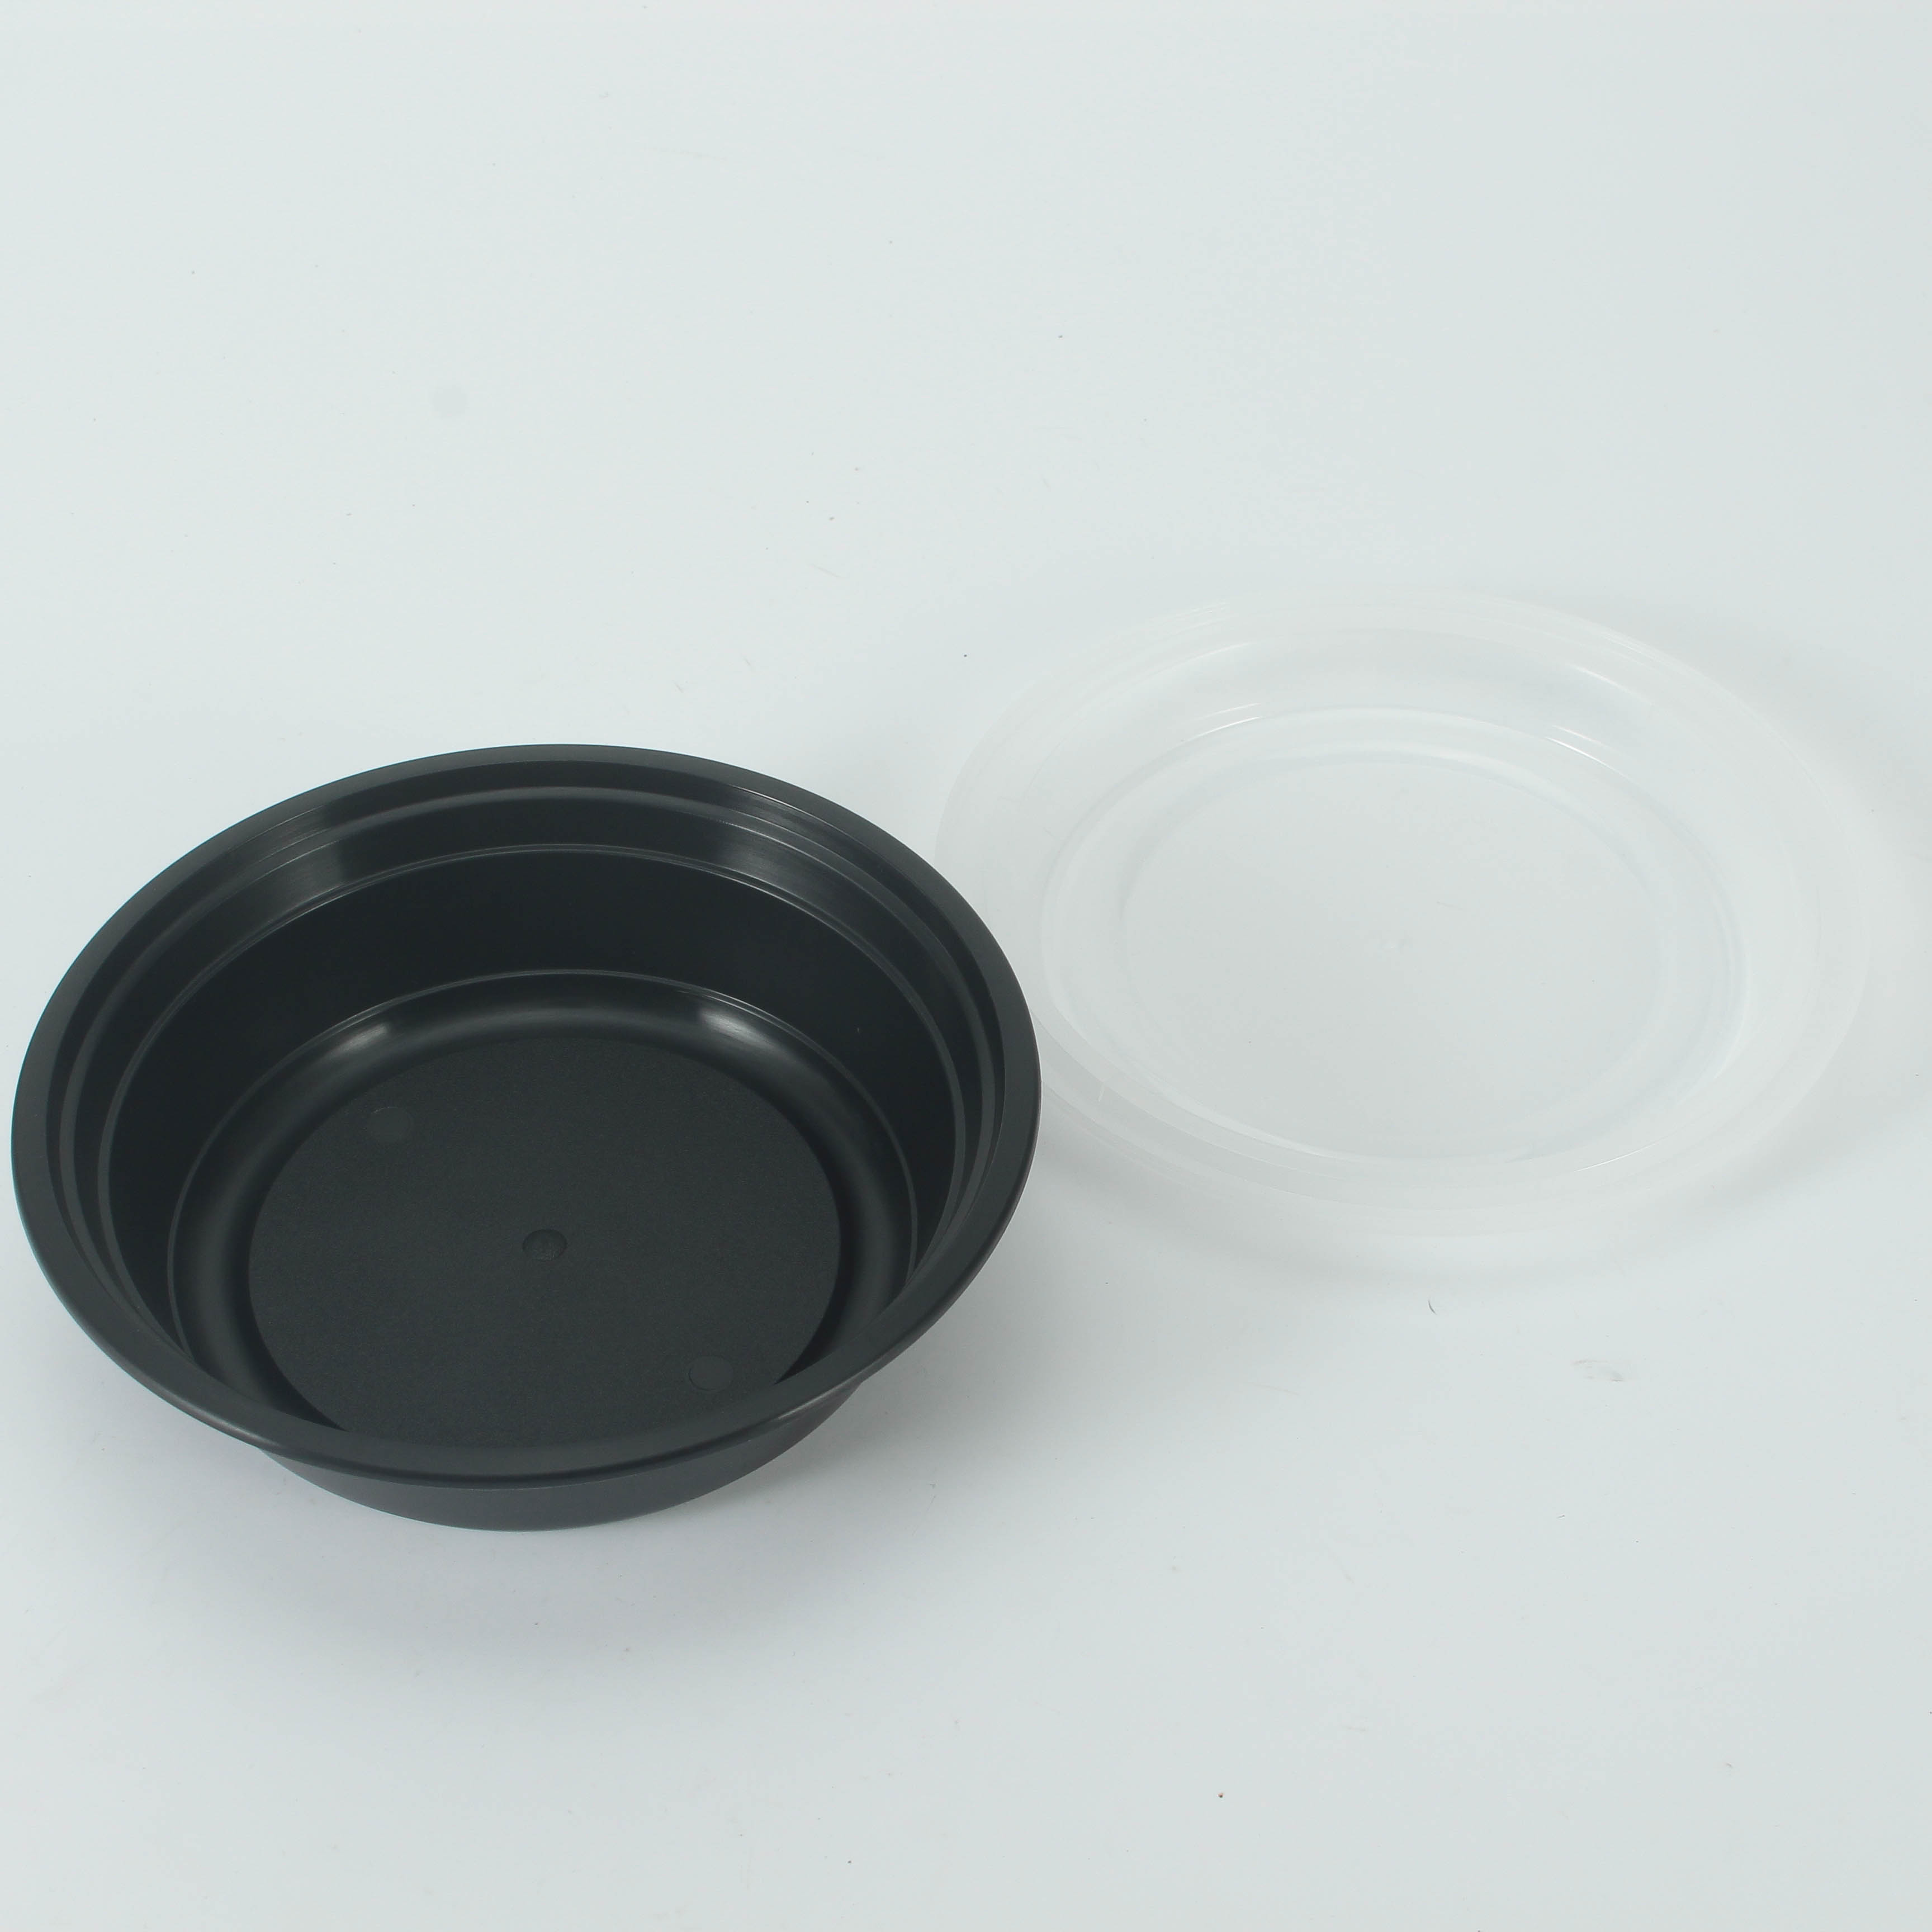 48 oz Disposable Plastic Bowl